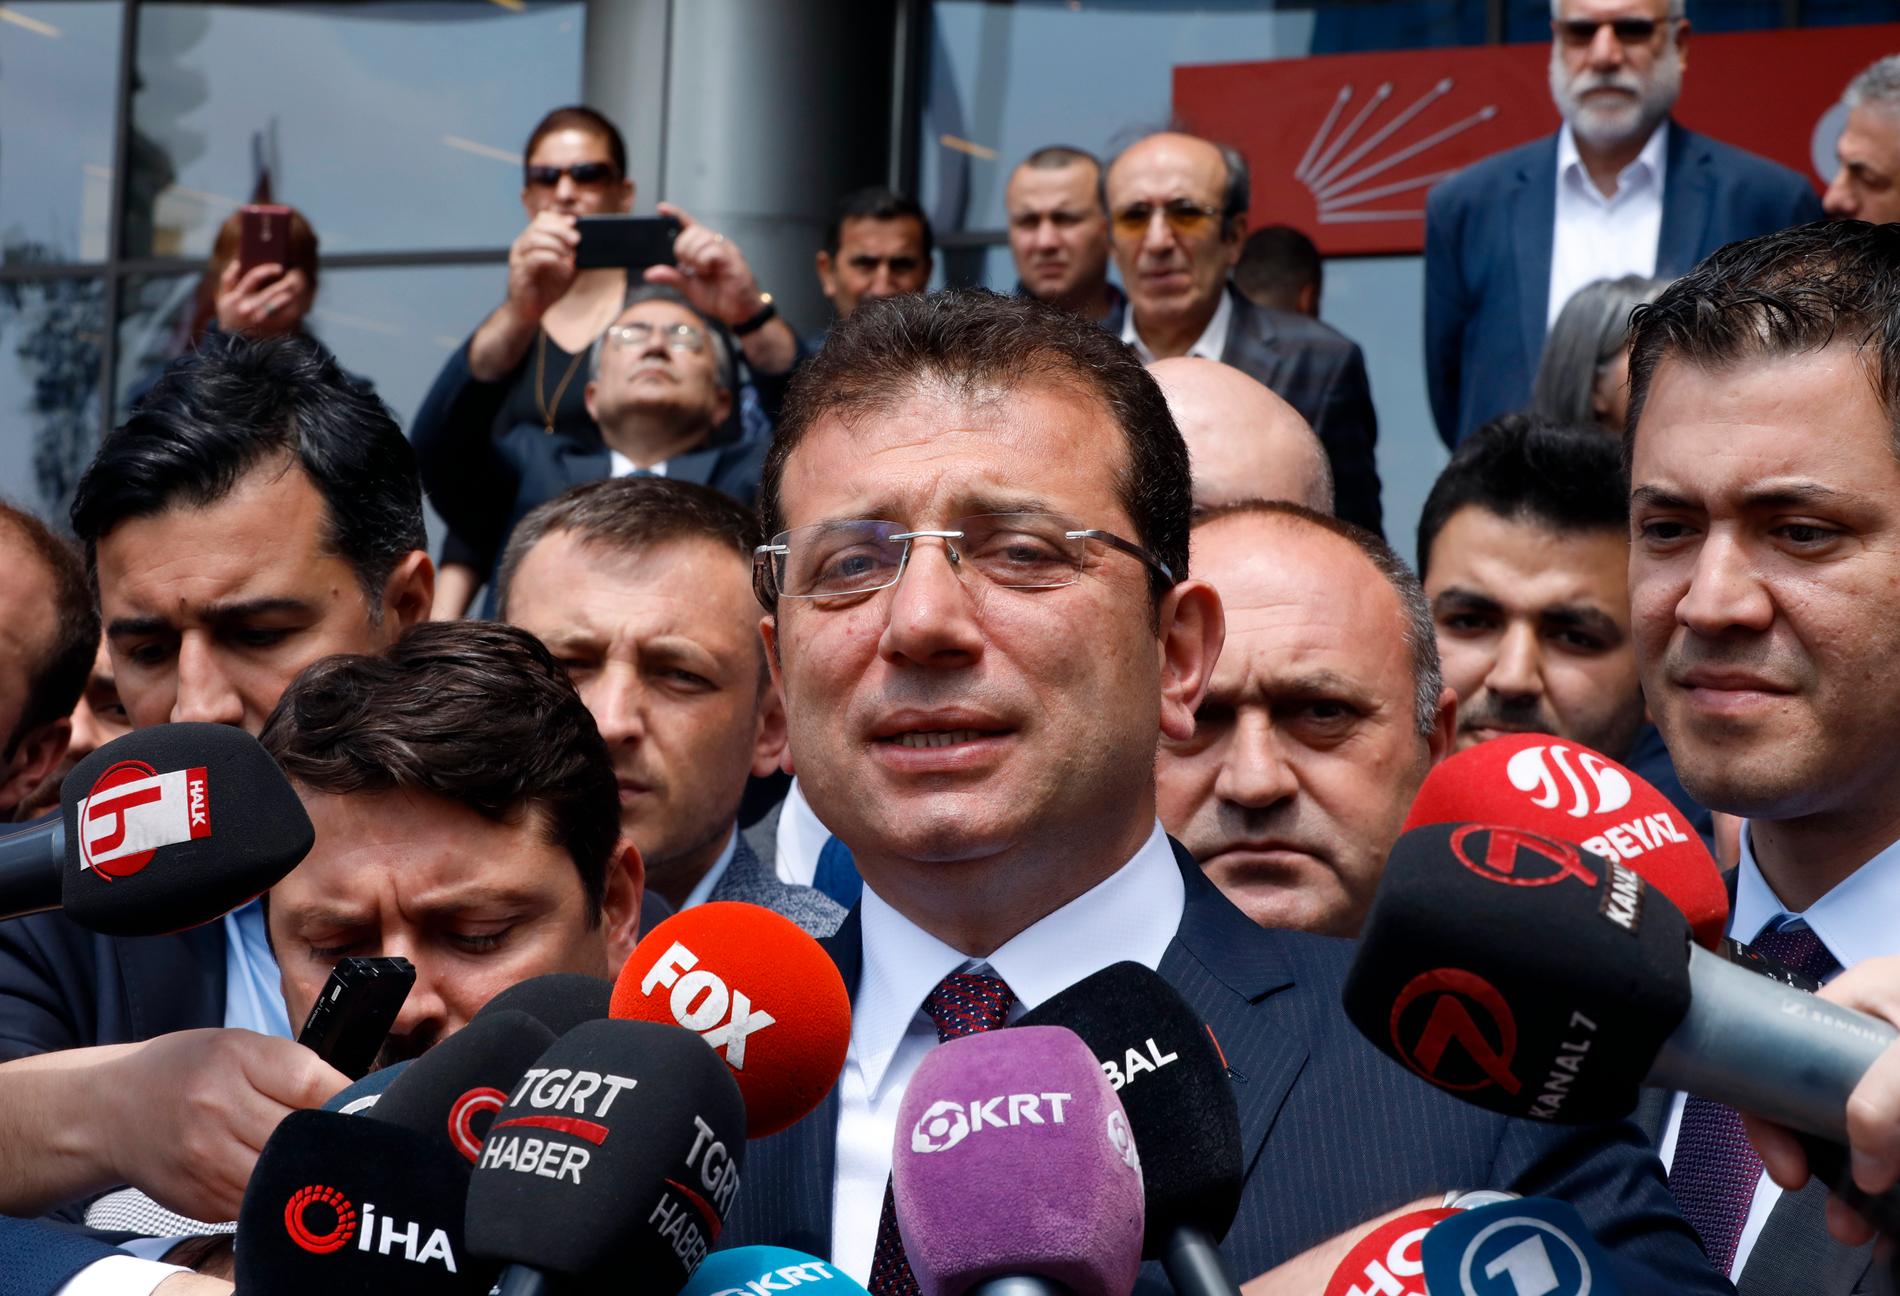 CHP:s kandidat Ekrem Imamoglu segrade i borgmästarvalet i Istanbul i slutet av mars, men valet har ogiltigförklarats av president Recep Tayyip Erdogan från det konkurrerande partiet AKP.